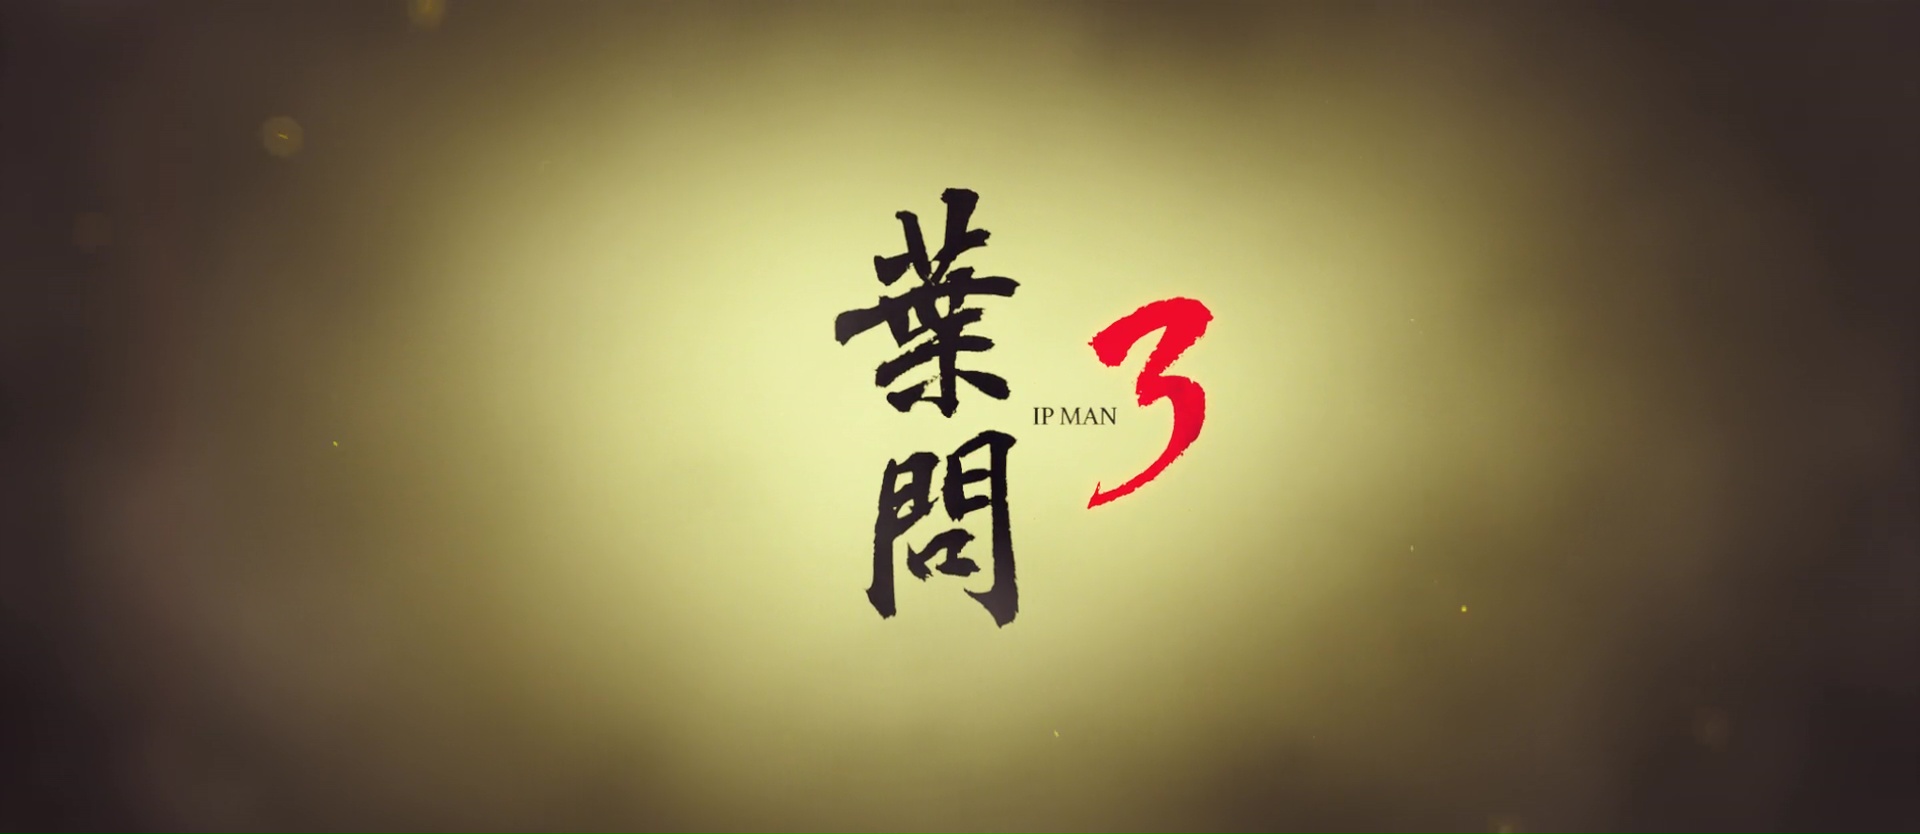 IP MAN 3 (葉問3) de Wilson Yip (2015)